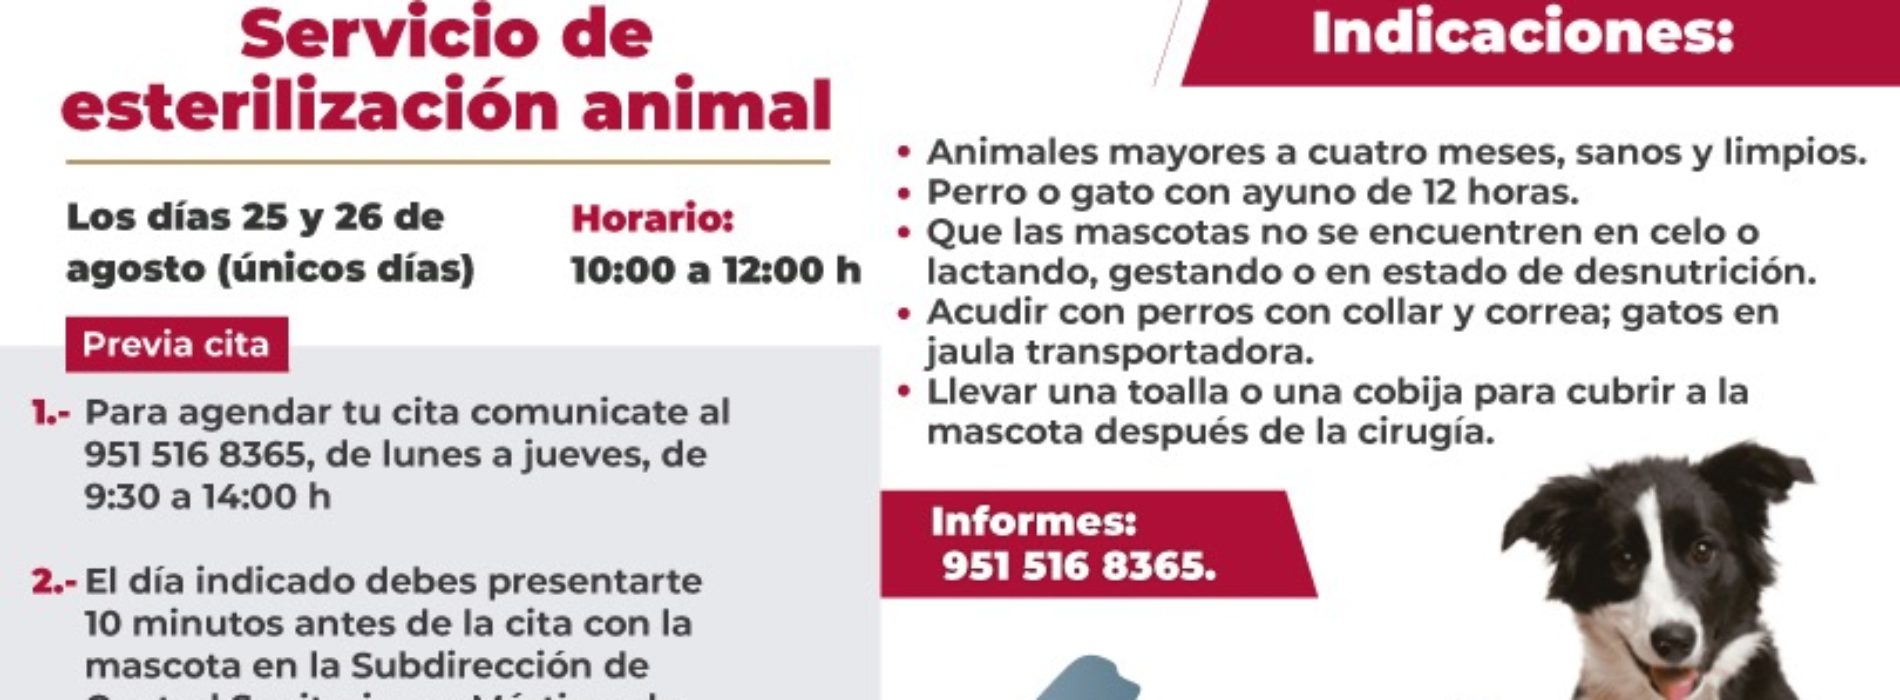 Ofrecerá Ayuntamiento de Oaxaca servicio de esterilización animal los días 25 y 26 de agosto